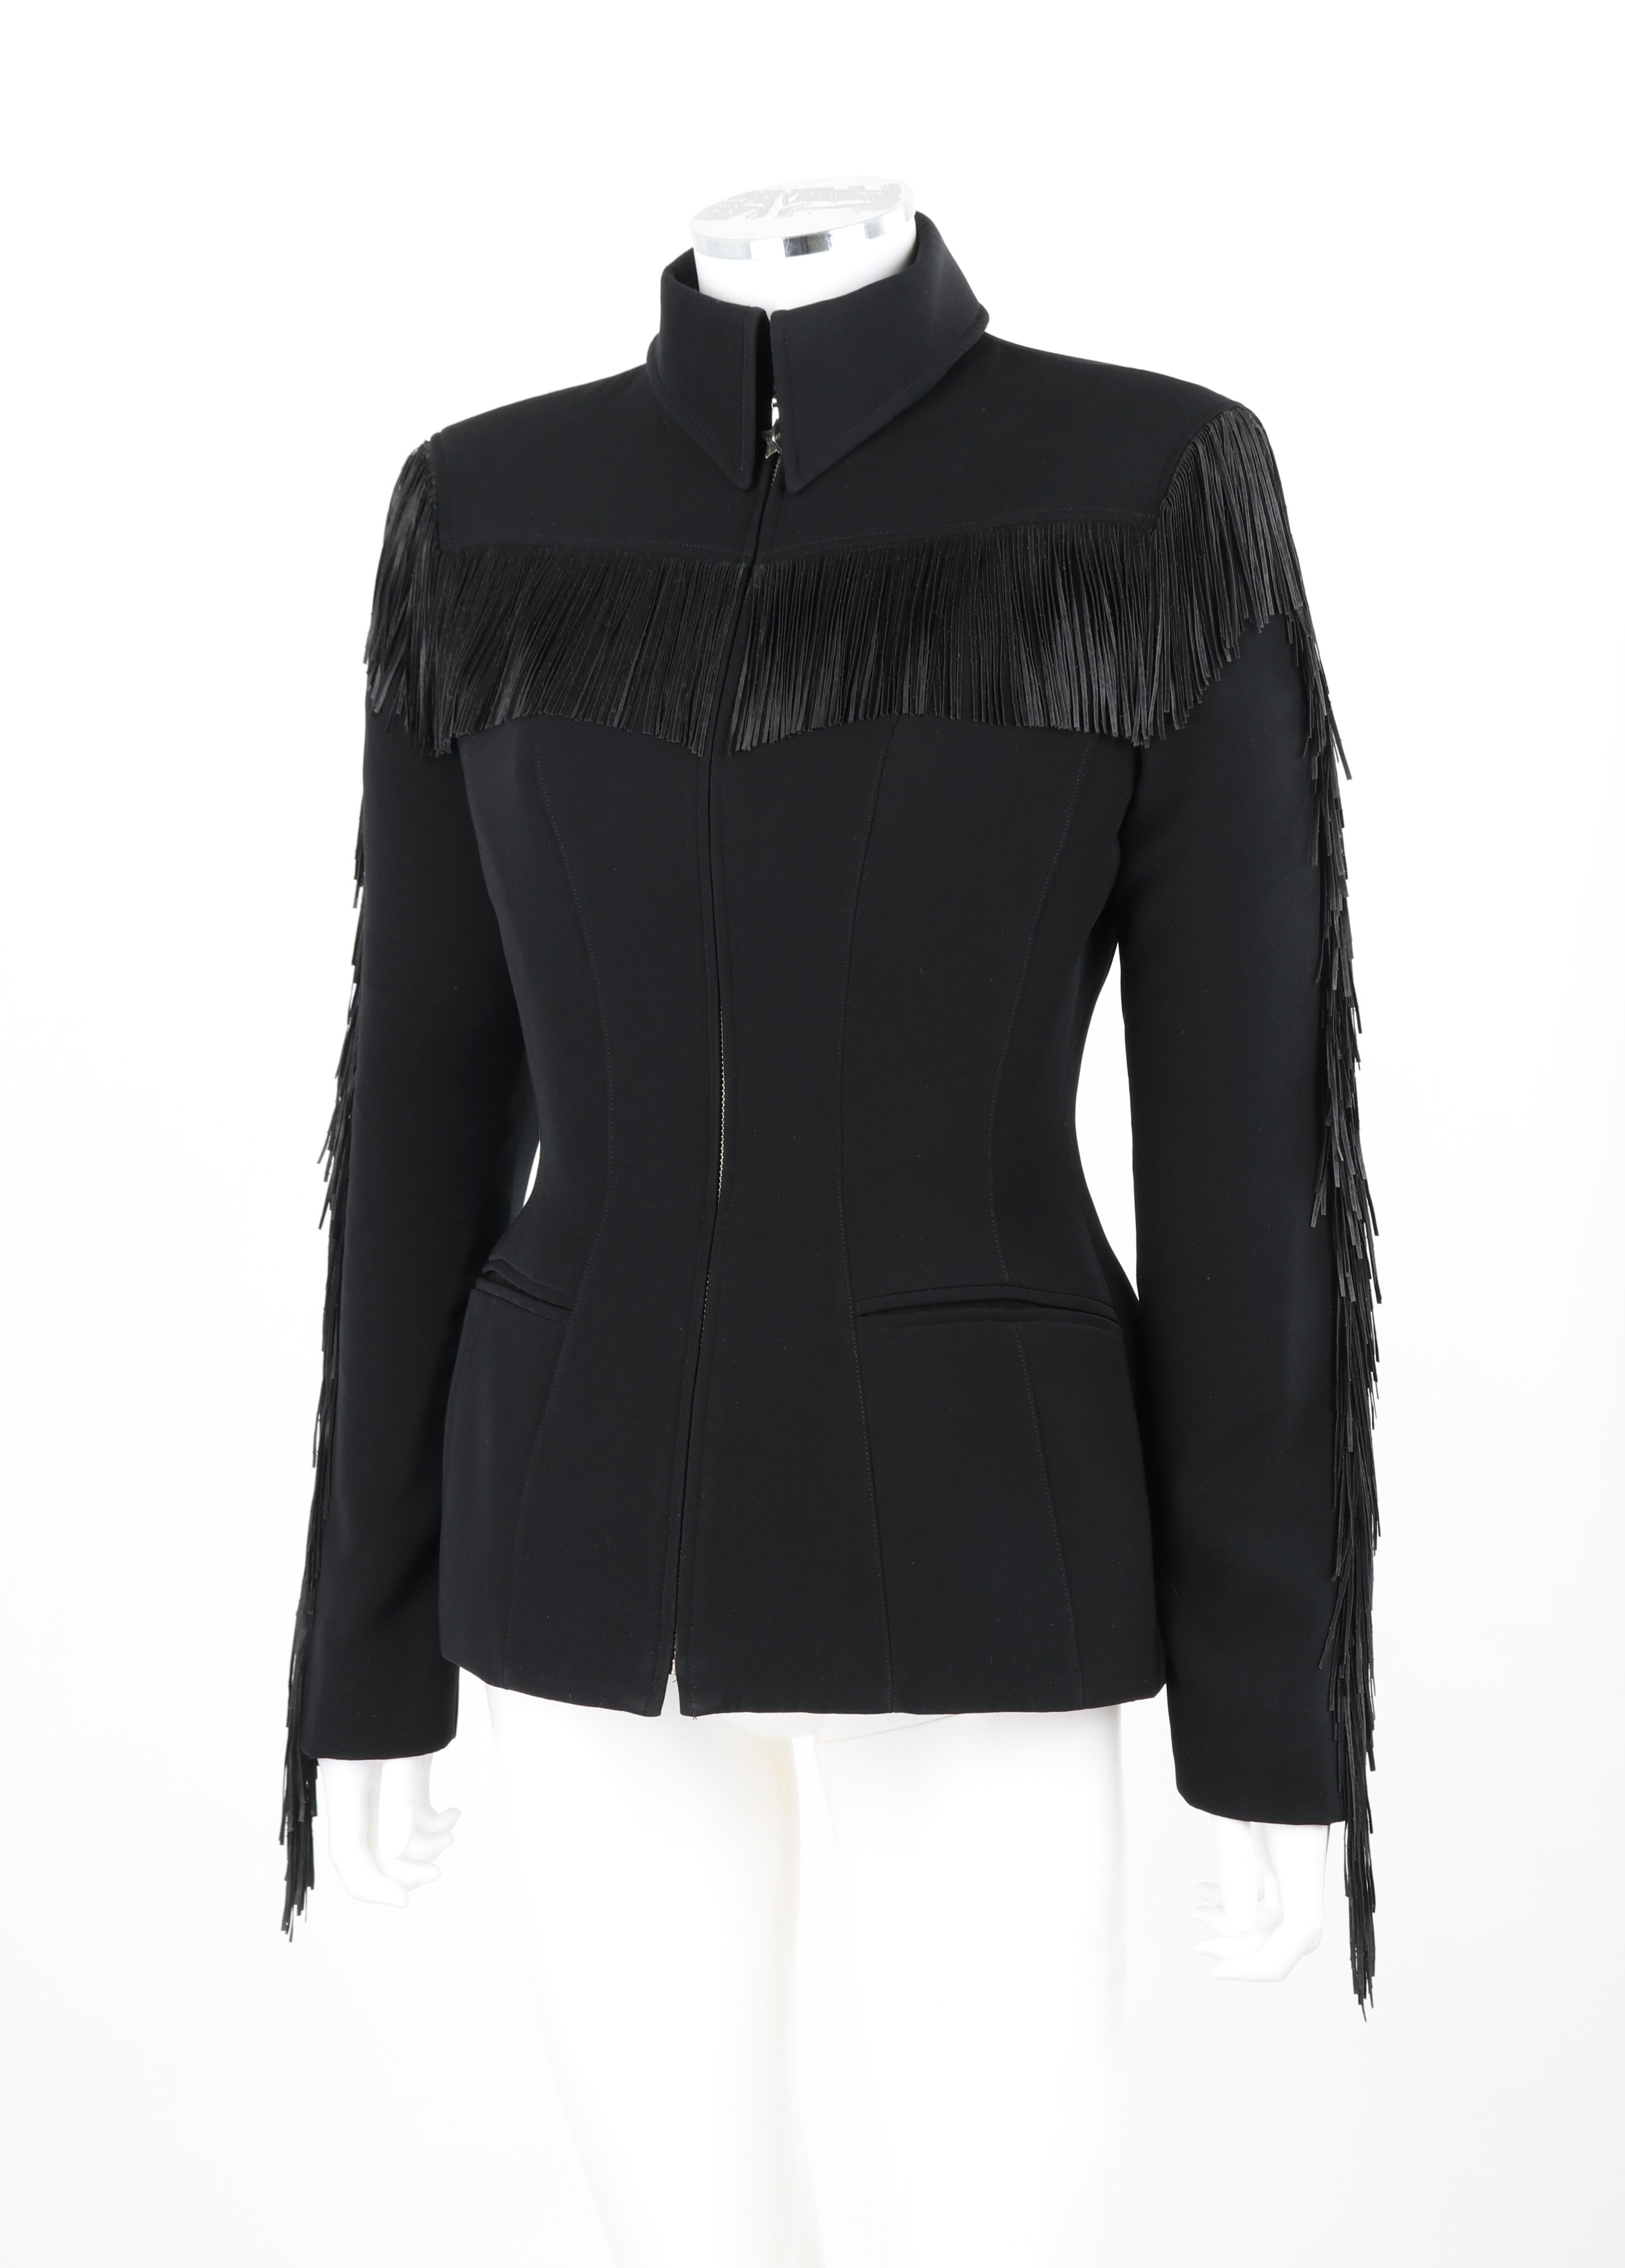 THIERRY MUGLER c.1990's Vtg Black Fringe High Collar Structured Zip Up Jacket  For Sale 3